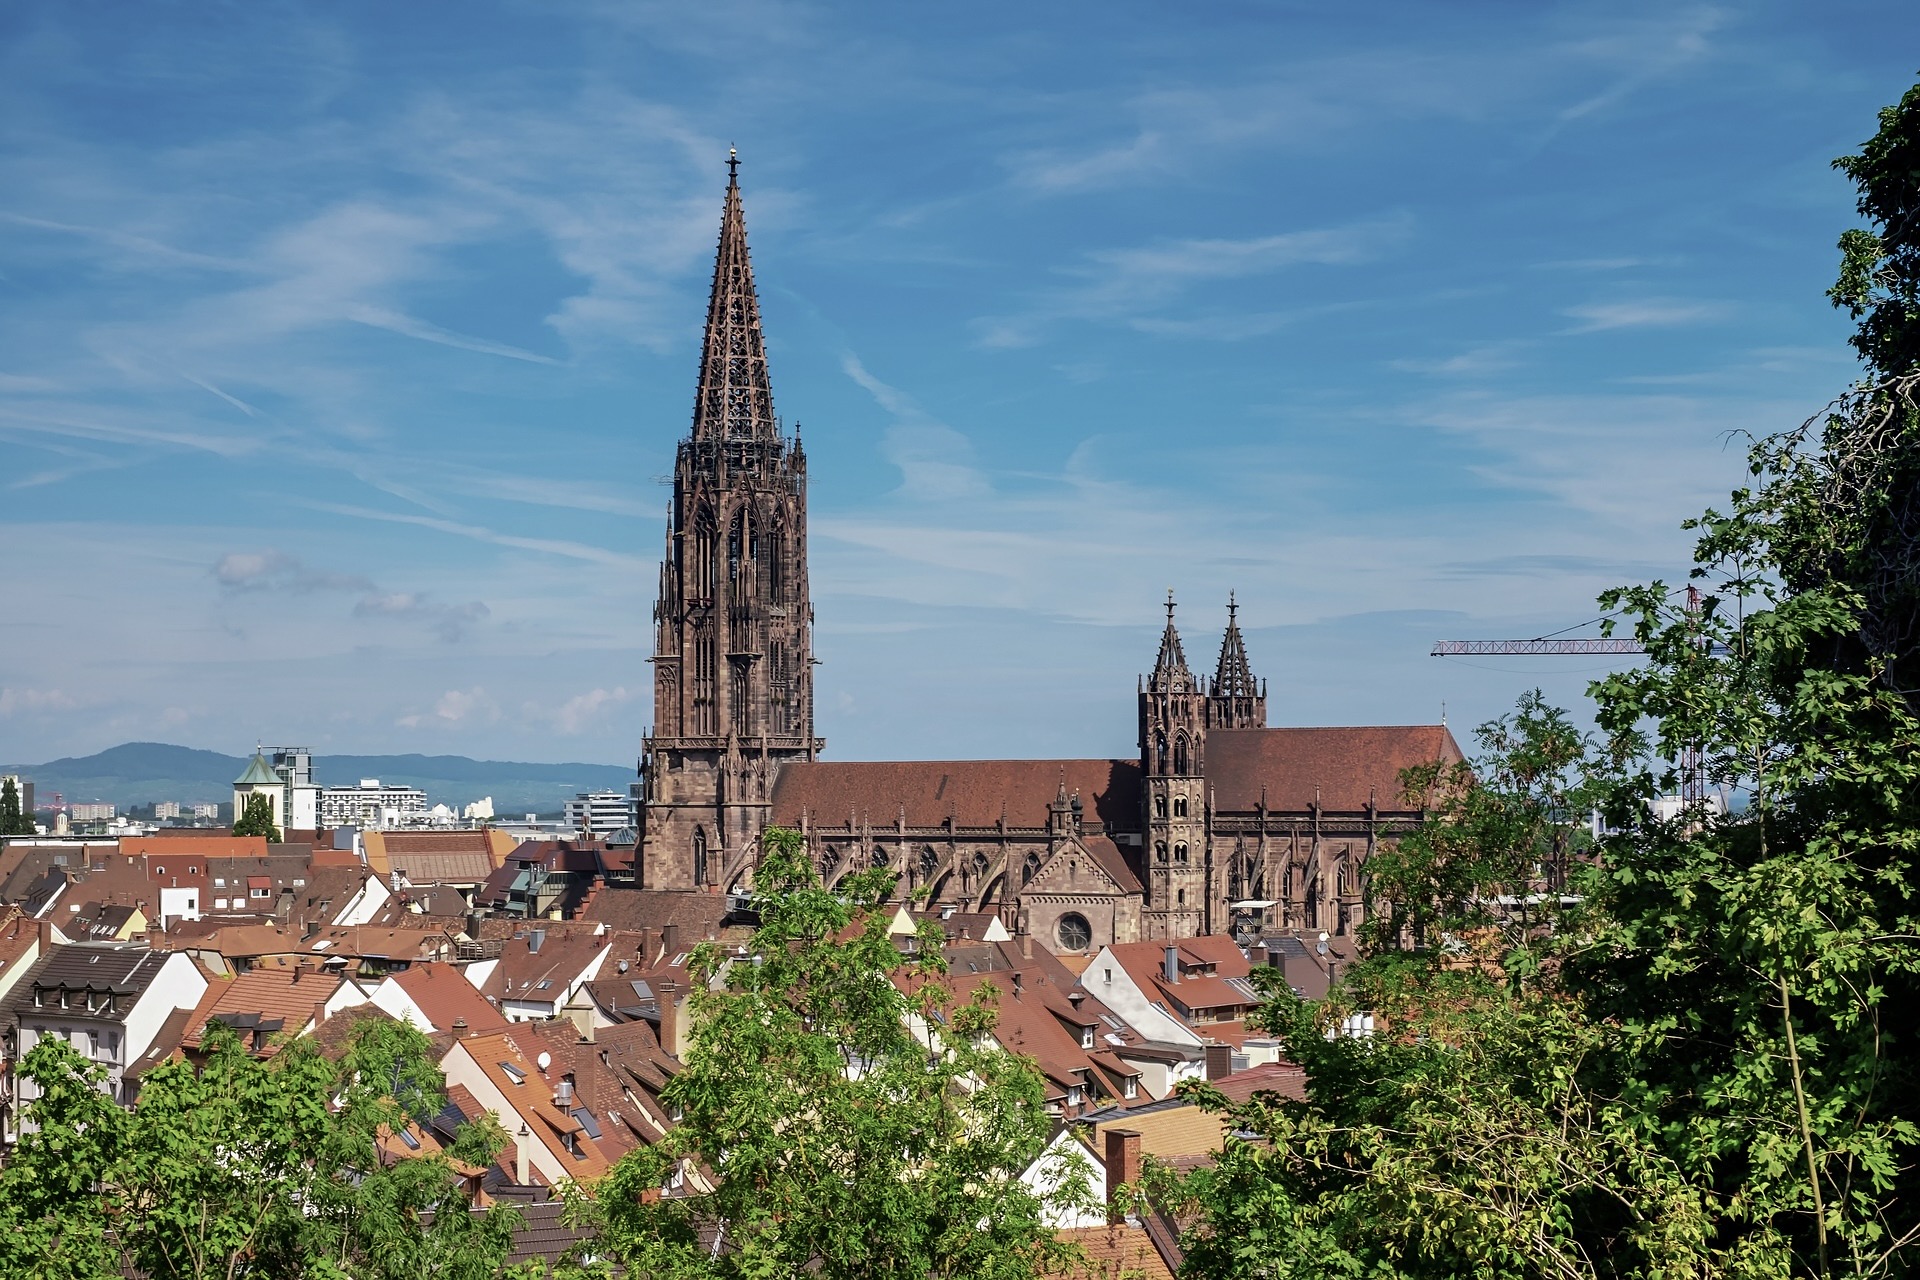 Freiburg gehört zu den schönen Städten in Süddeutschland